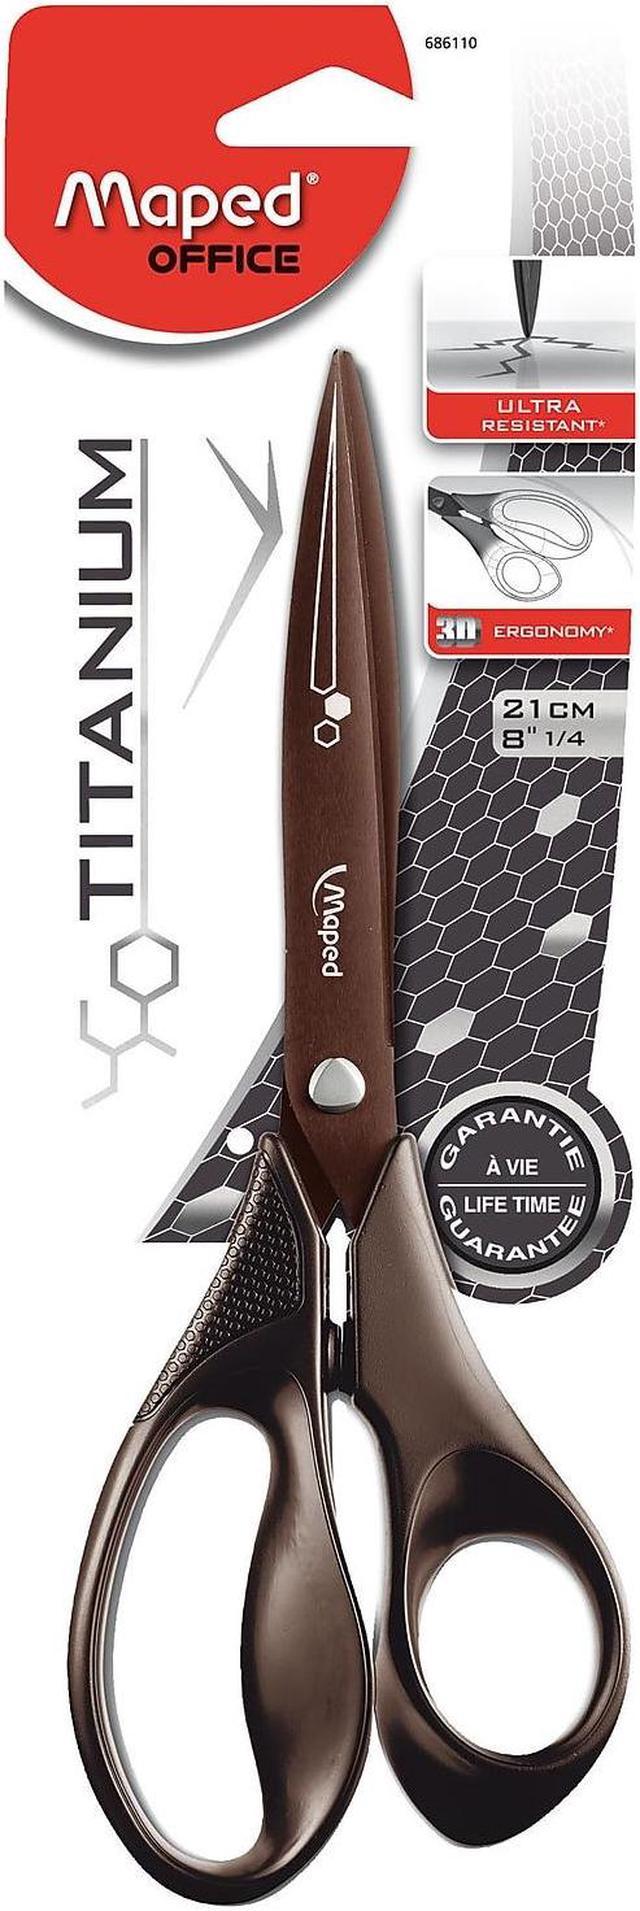 Maped Expert Titanium Scissors